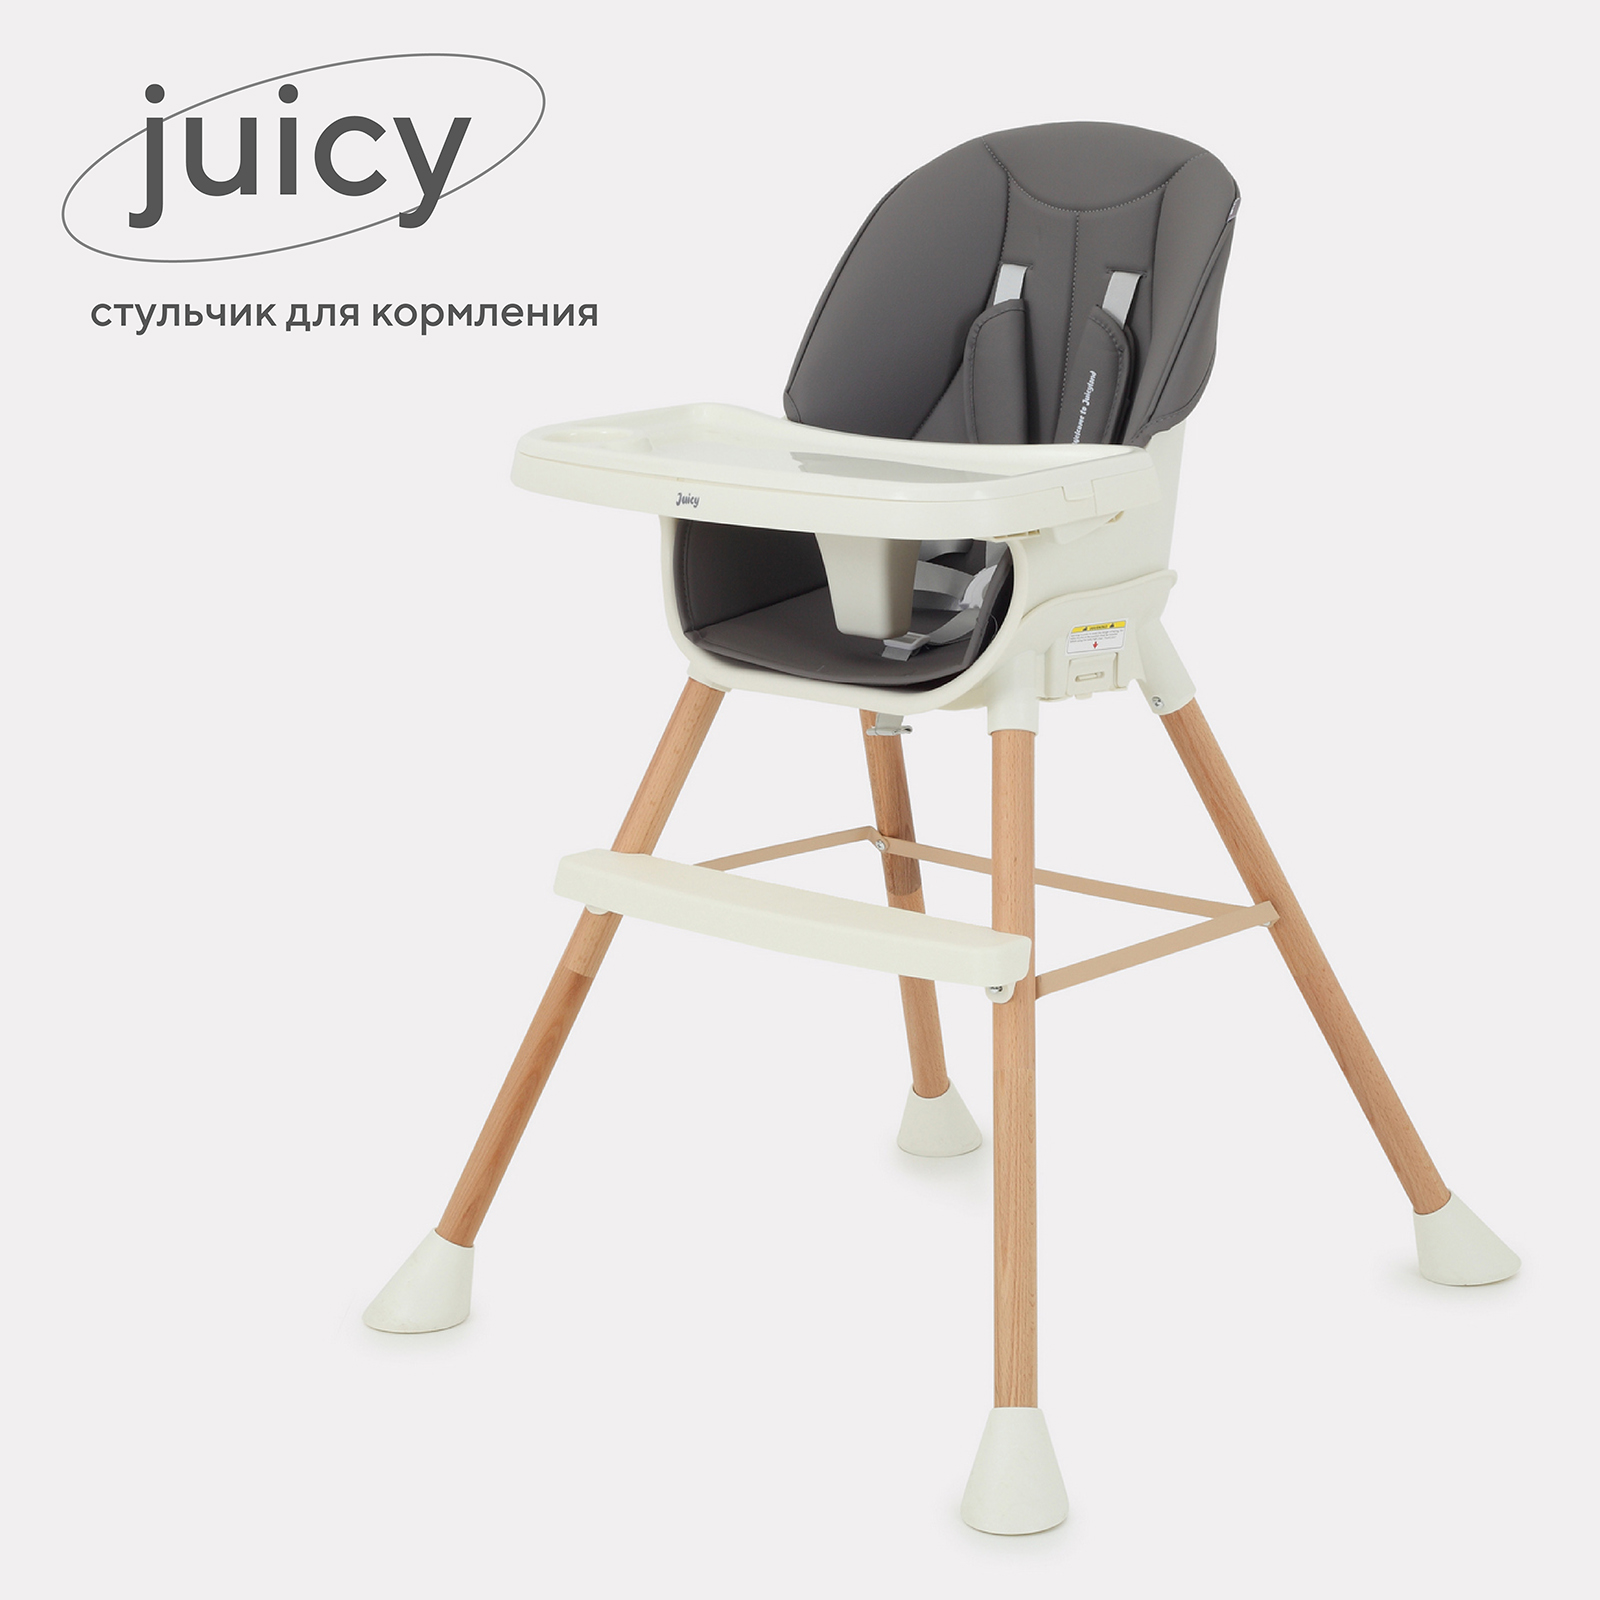 Стульчик для кормления RANT Juicy RH160 Wood grey стульчик для кормления mowbaby honey от 6 месяцев rh600 grey